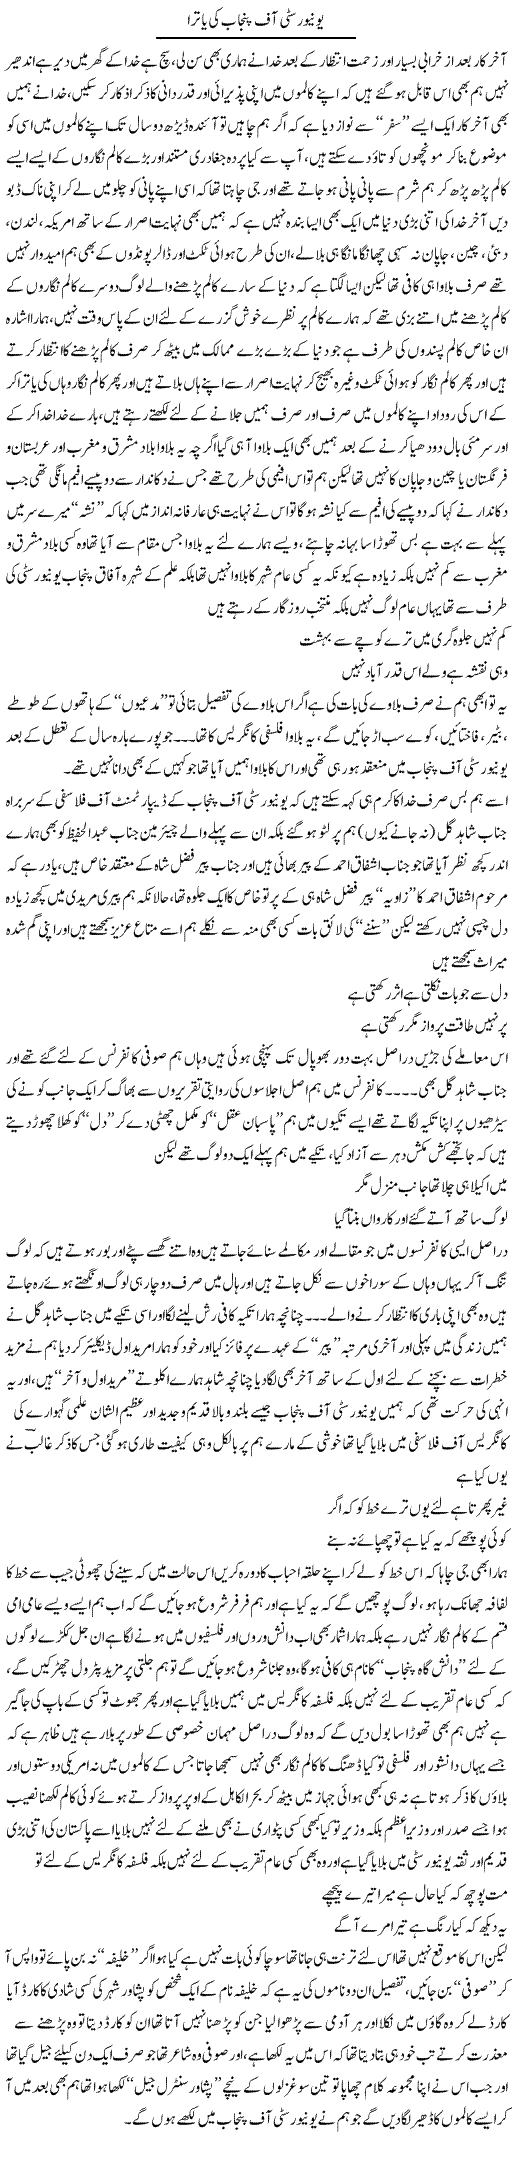 University Of Punjab Ki Yatra | Saad Ullah Jan Barq | Daily Urdu Columns